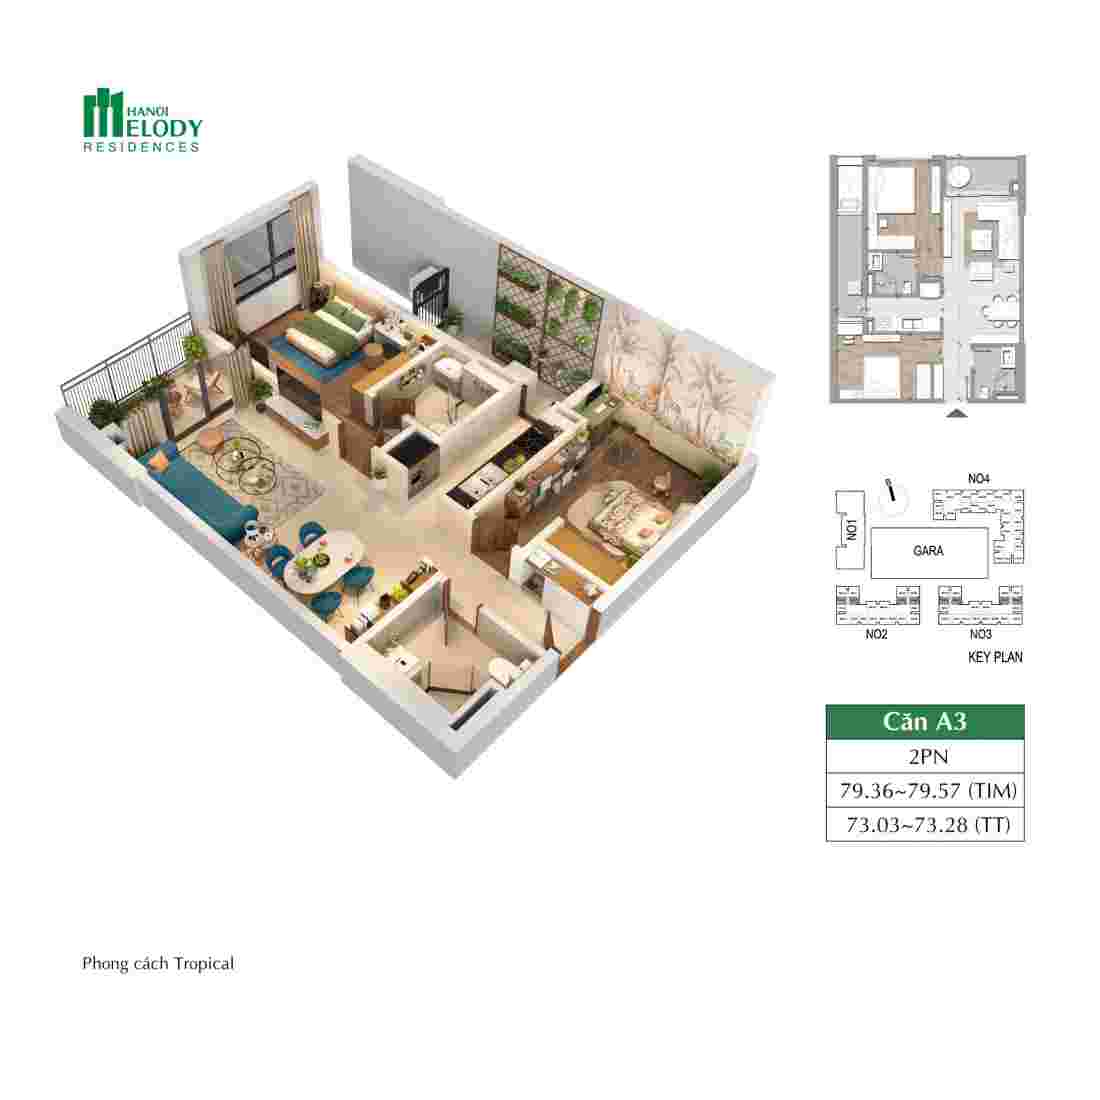 Thiết kế căn hộ điển hình tại dự án Hanoi Melody Residences